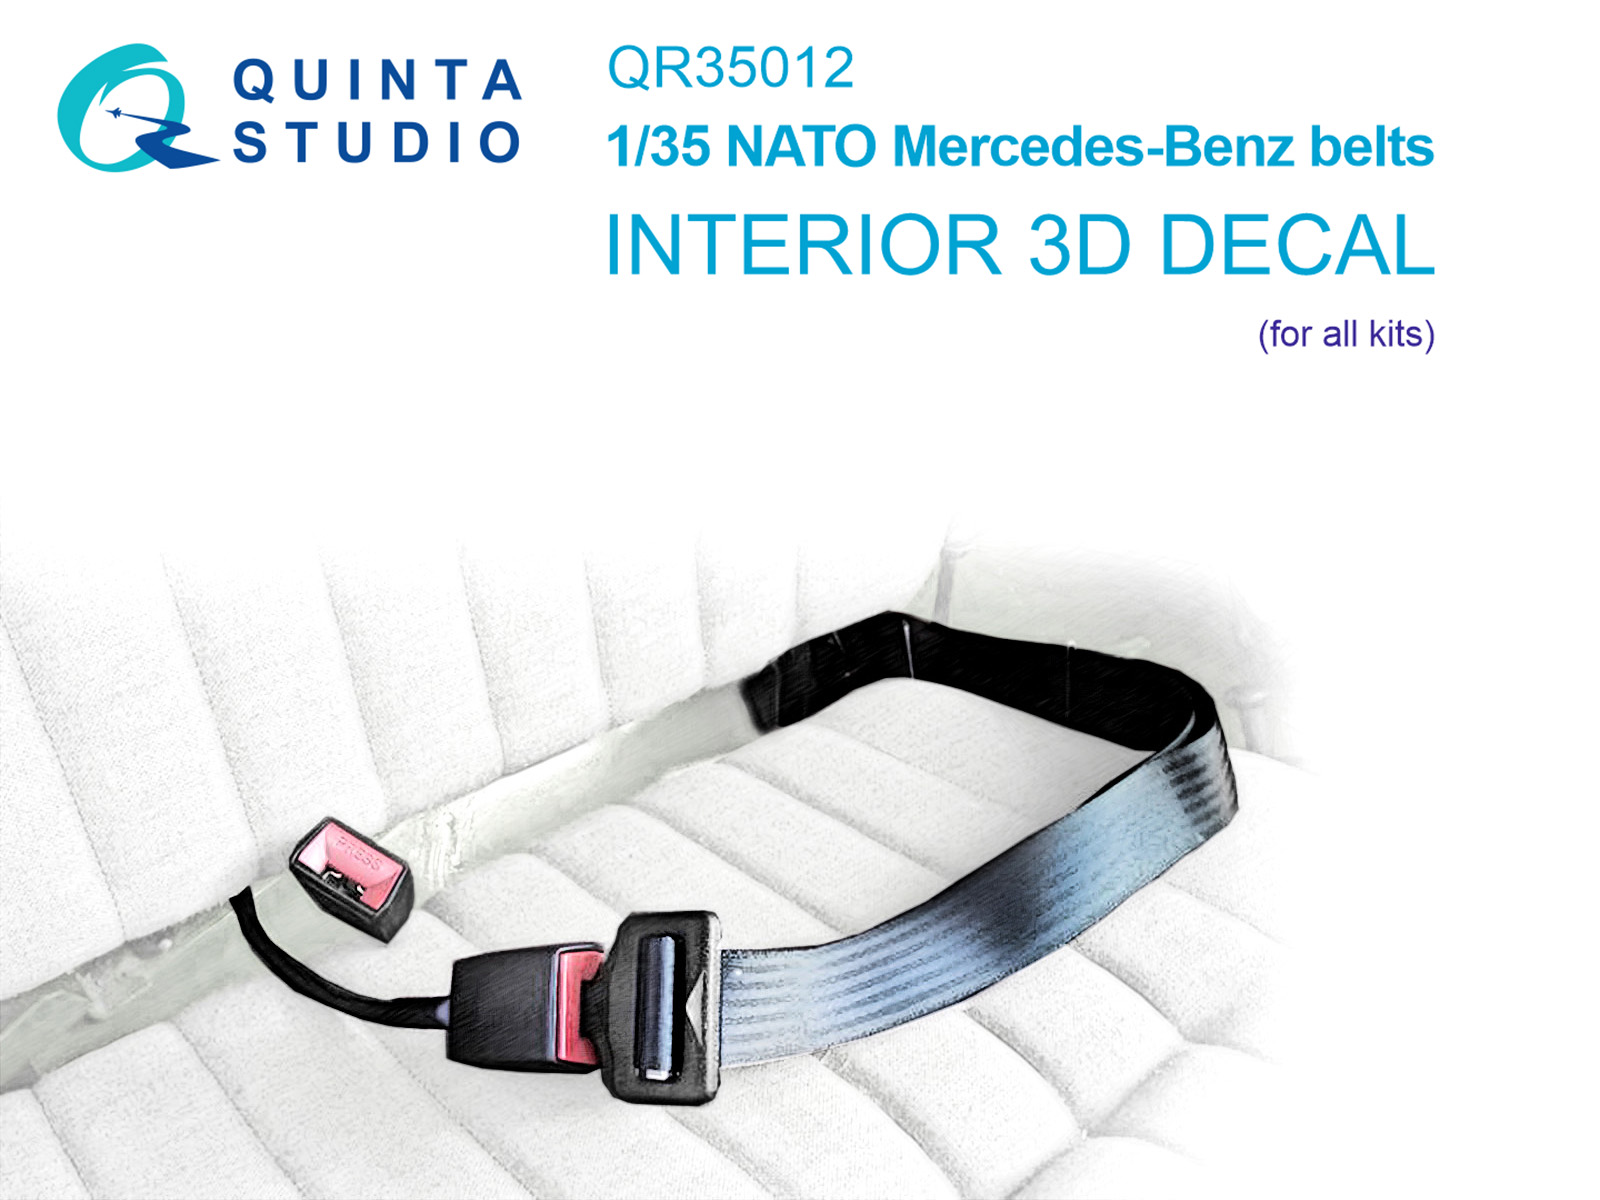 NATO Mercedes-Benz belts (All kits), 2 pcs